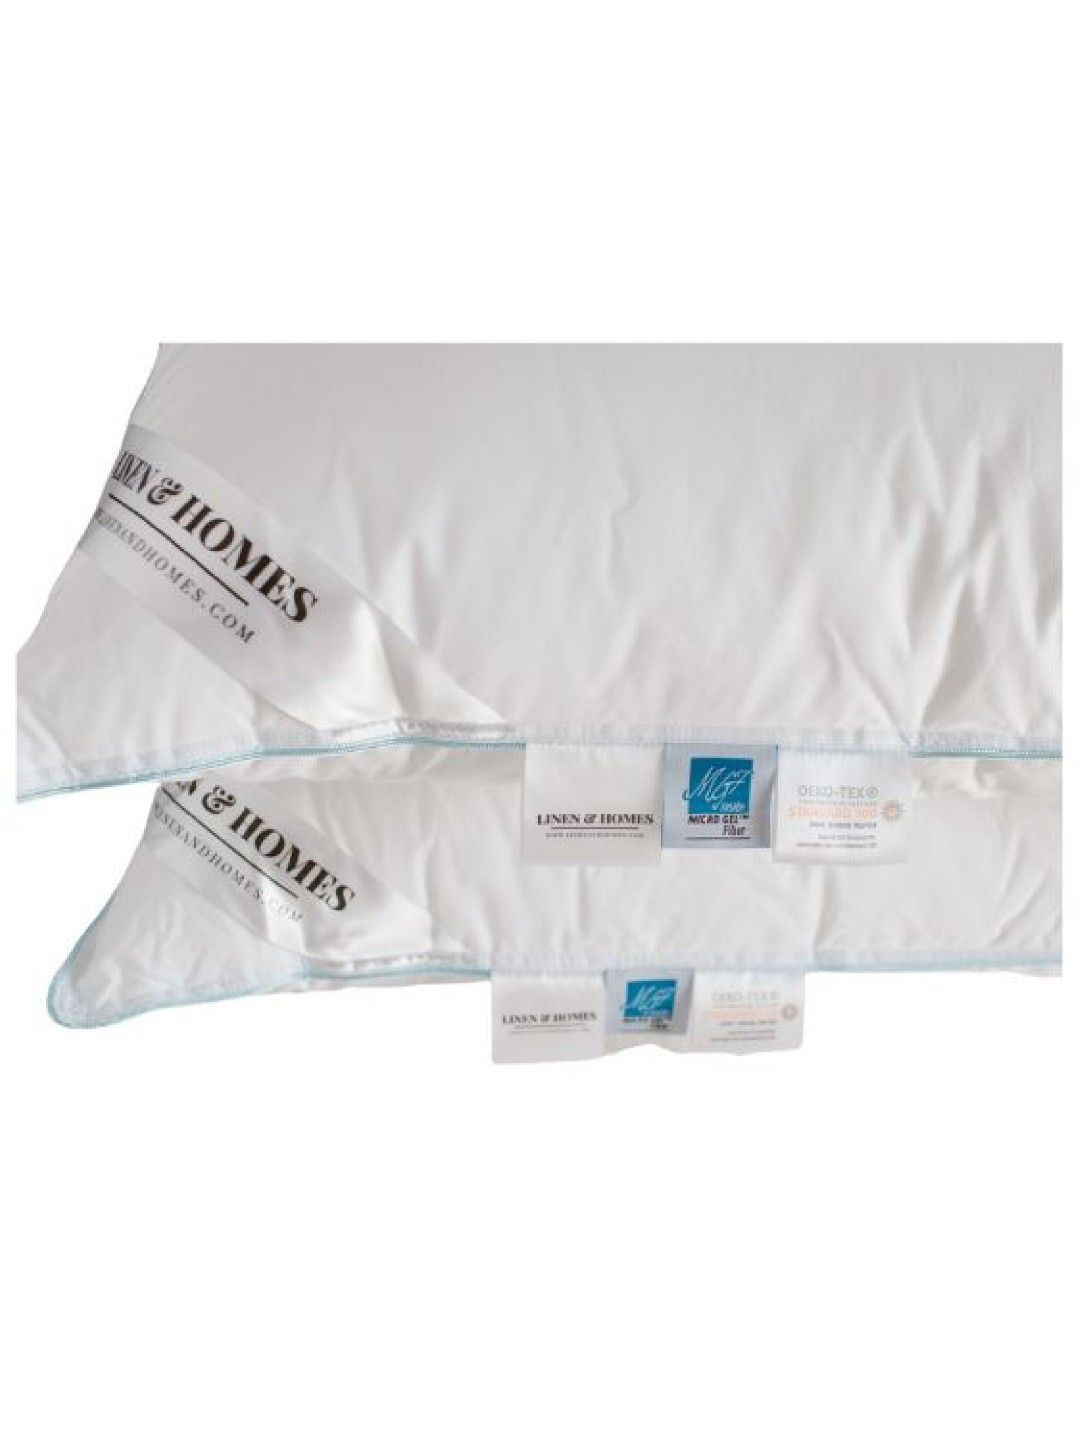 Linen & Homes Mellow Microgel Pillow